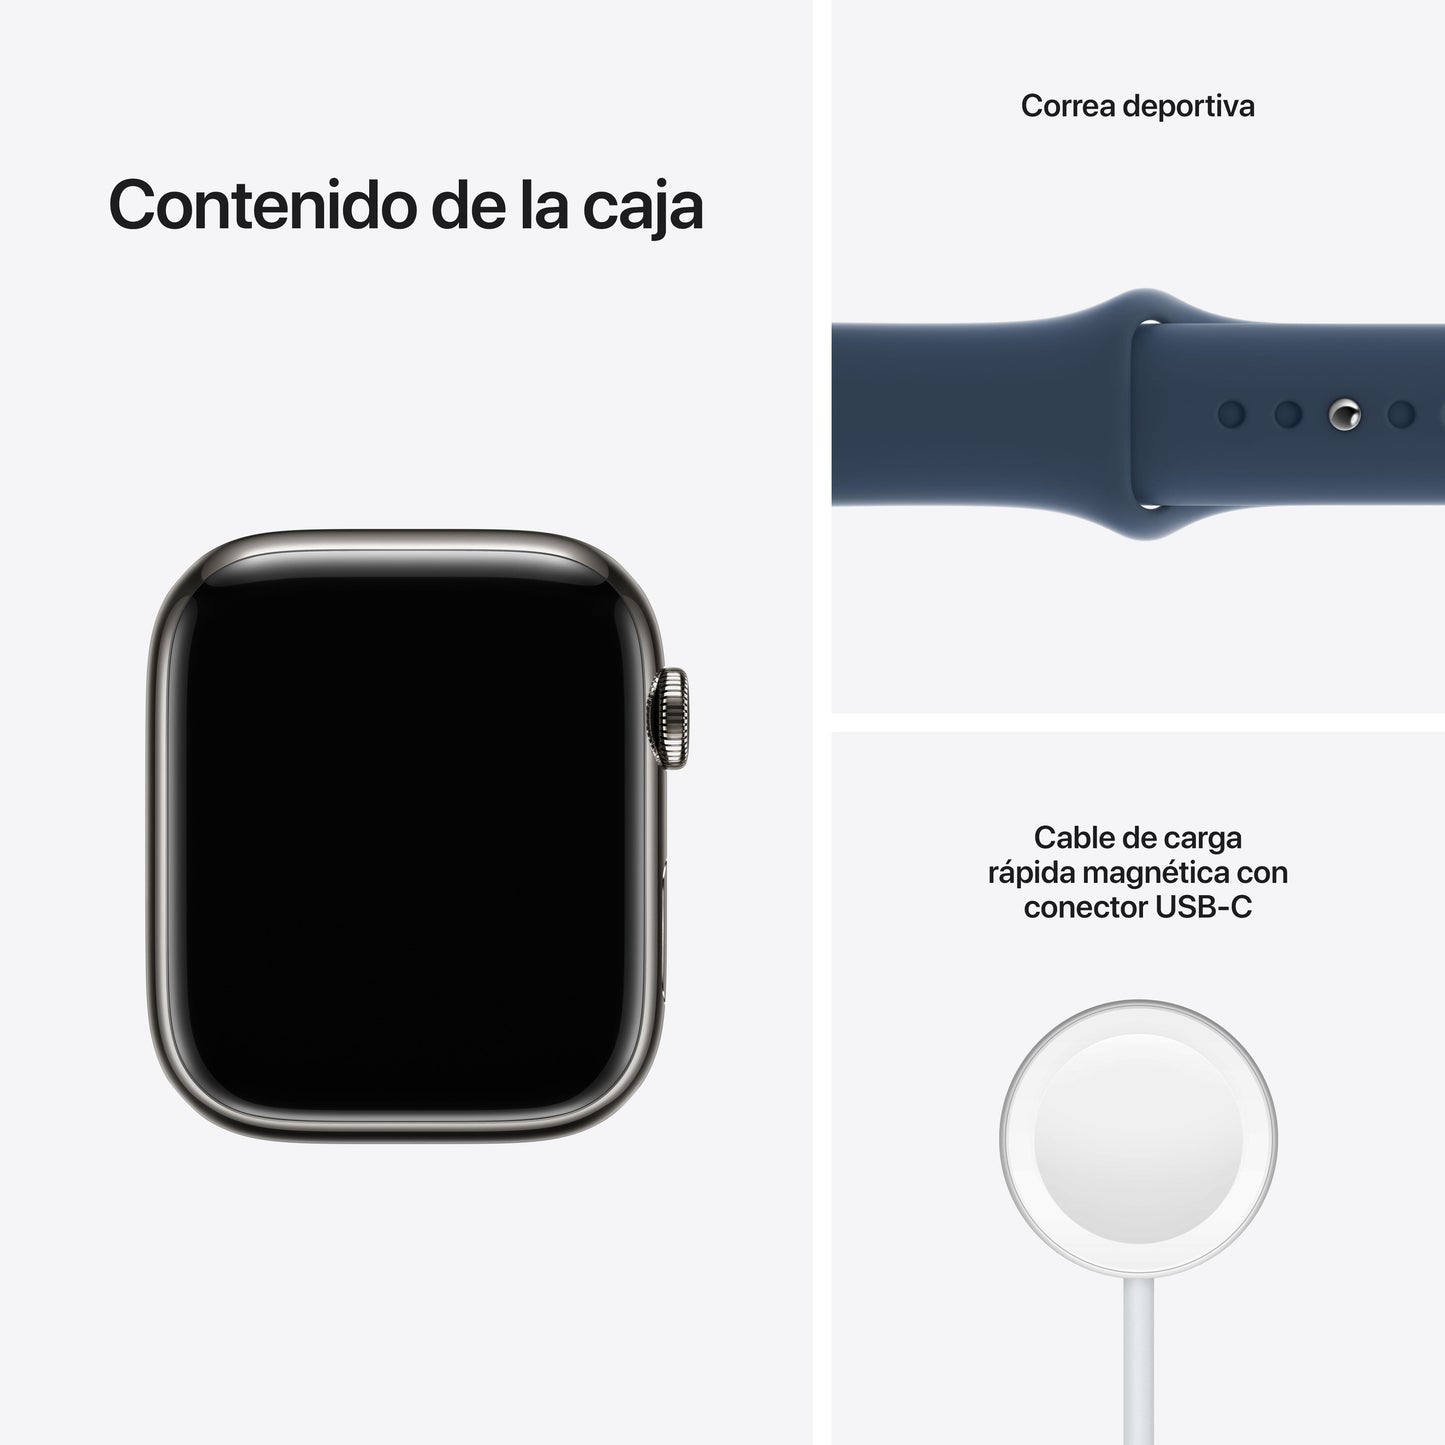 Apple Watch Series 7 (GPS + Cellular) - Caja de acero inoxidable en grafito de 45 mm - Correa deportiva en color abismo - Talla única